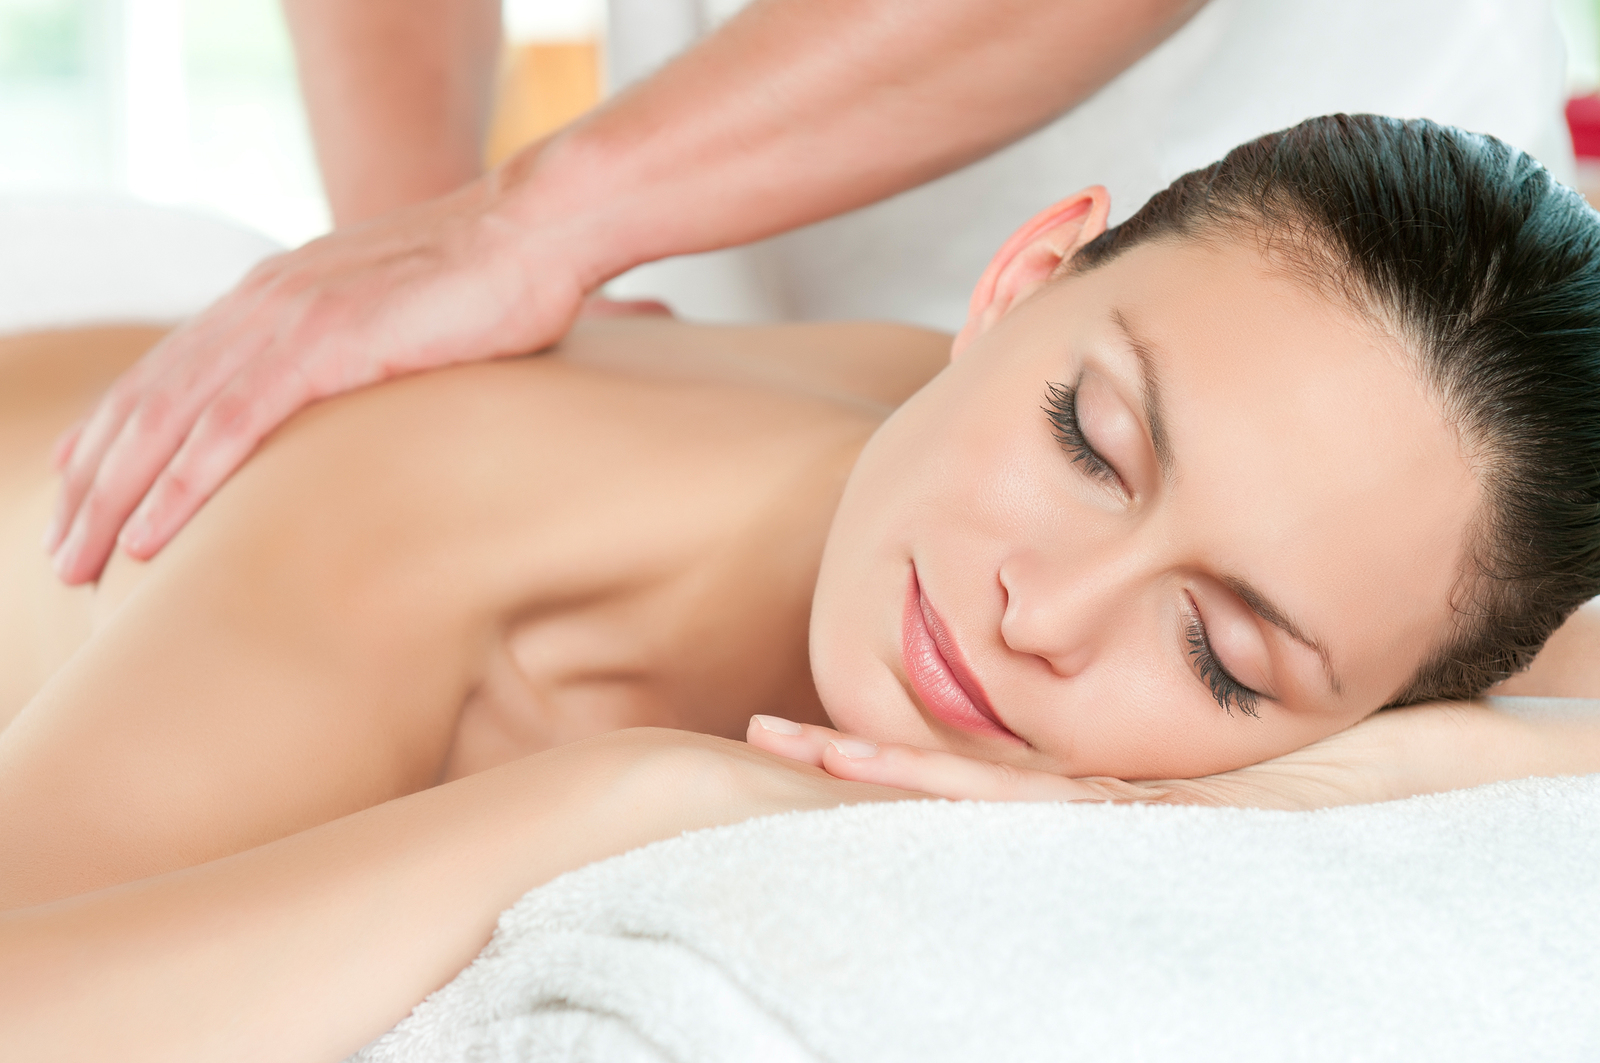 Jojoba-oil-uses-for-full-body-massage-treatment